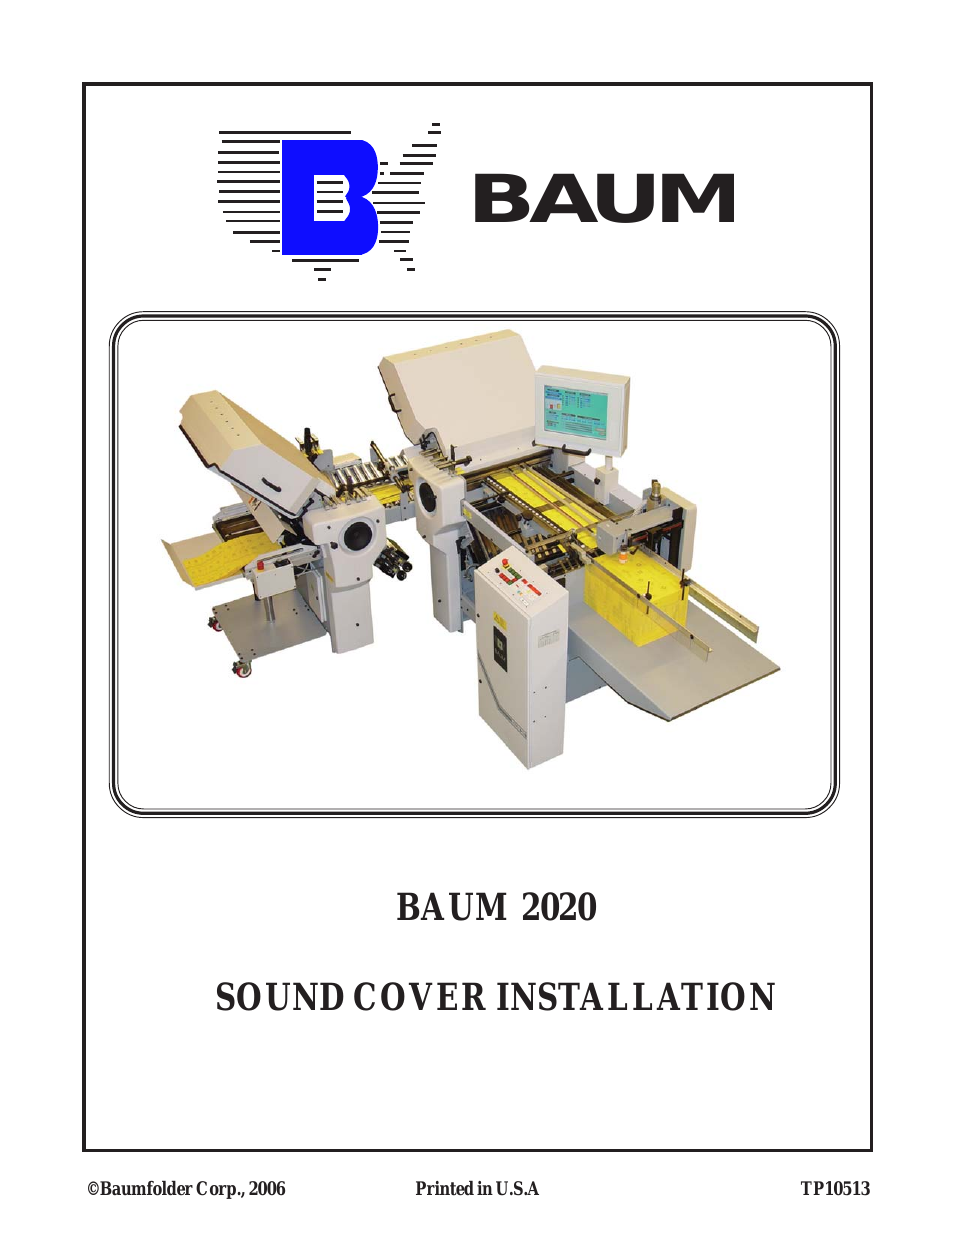 BAUM20: Sound Cover Installation